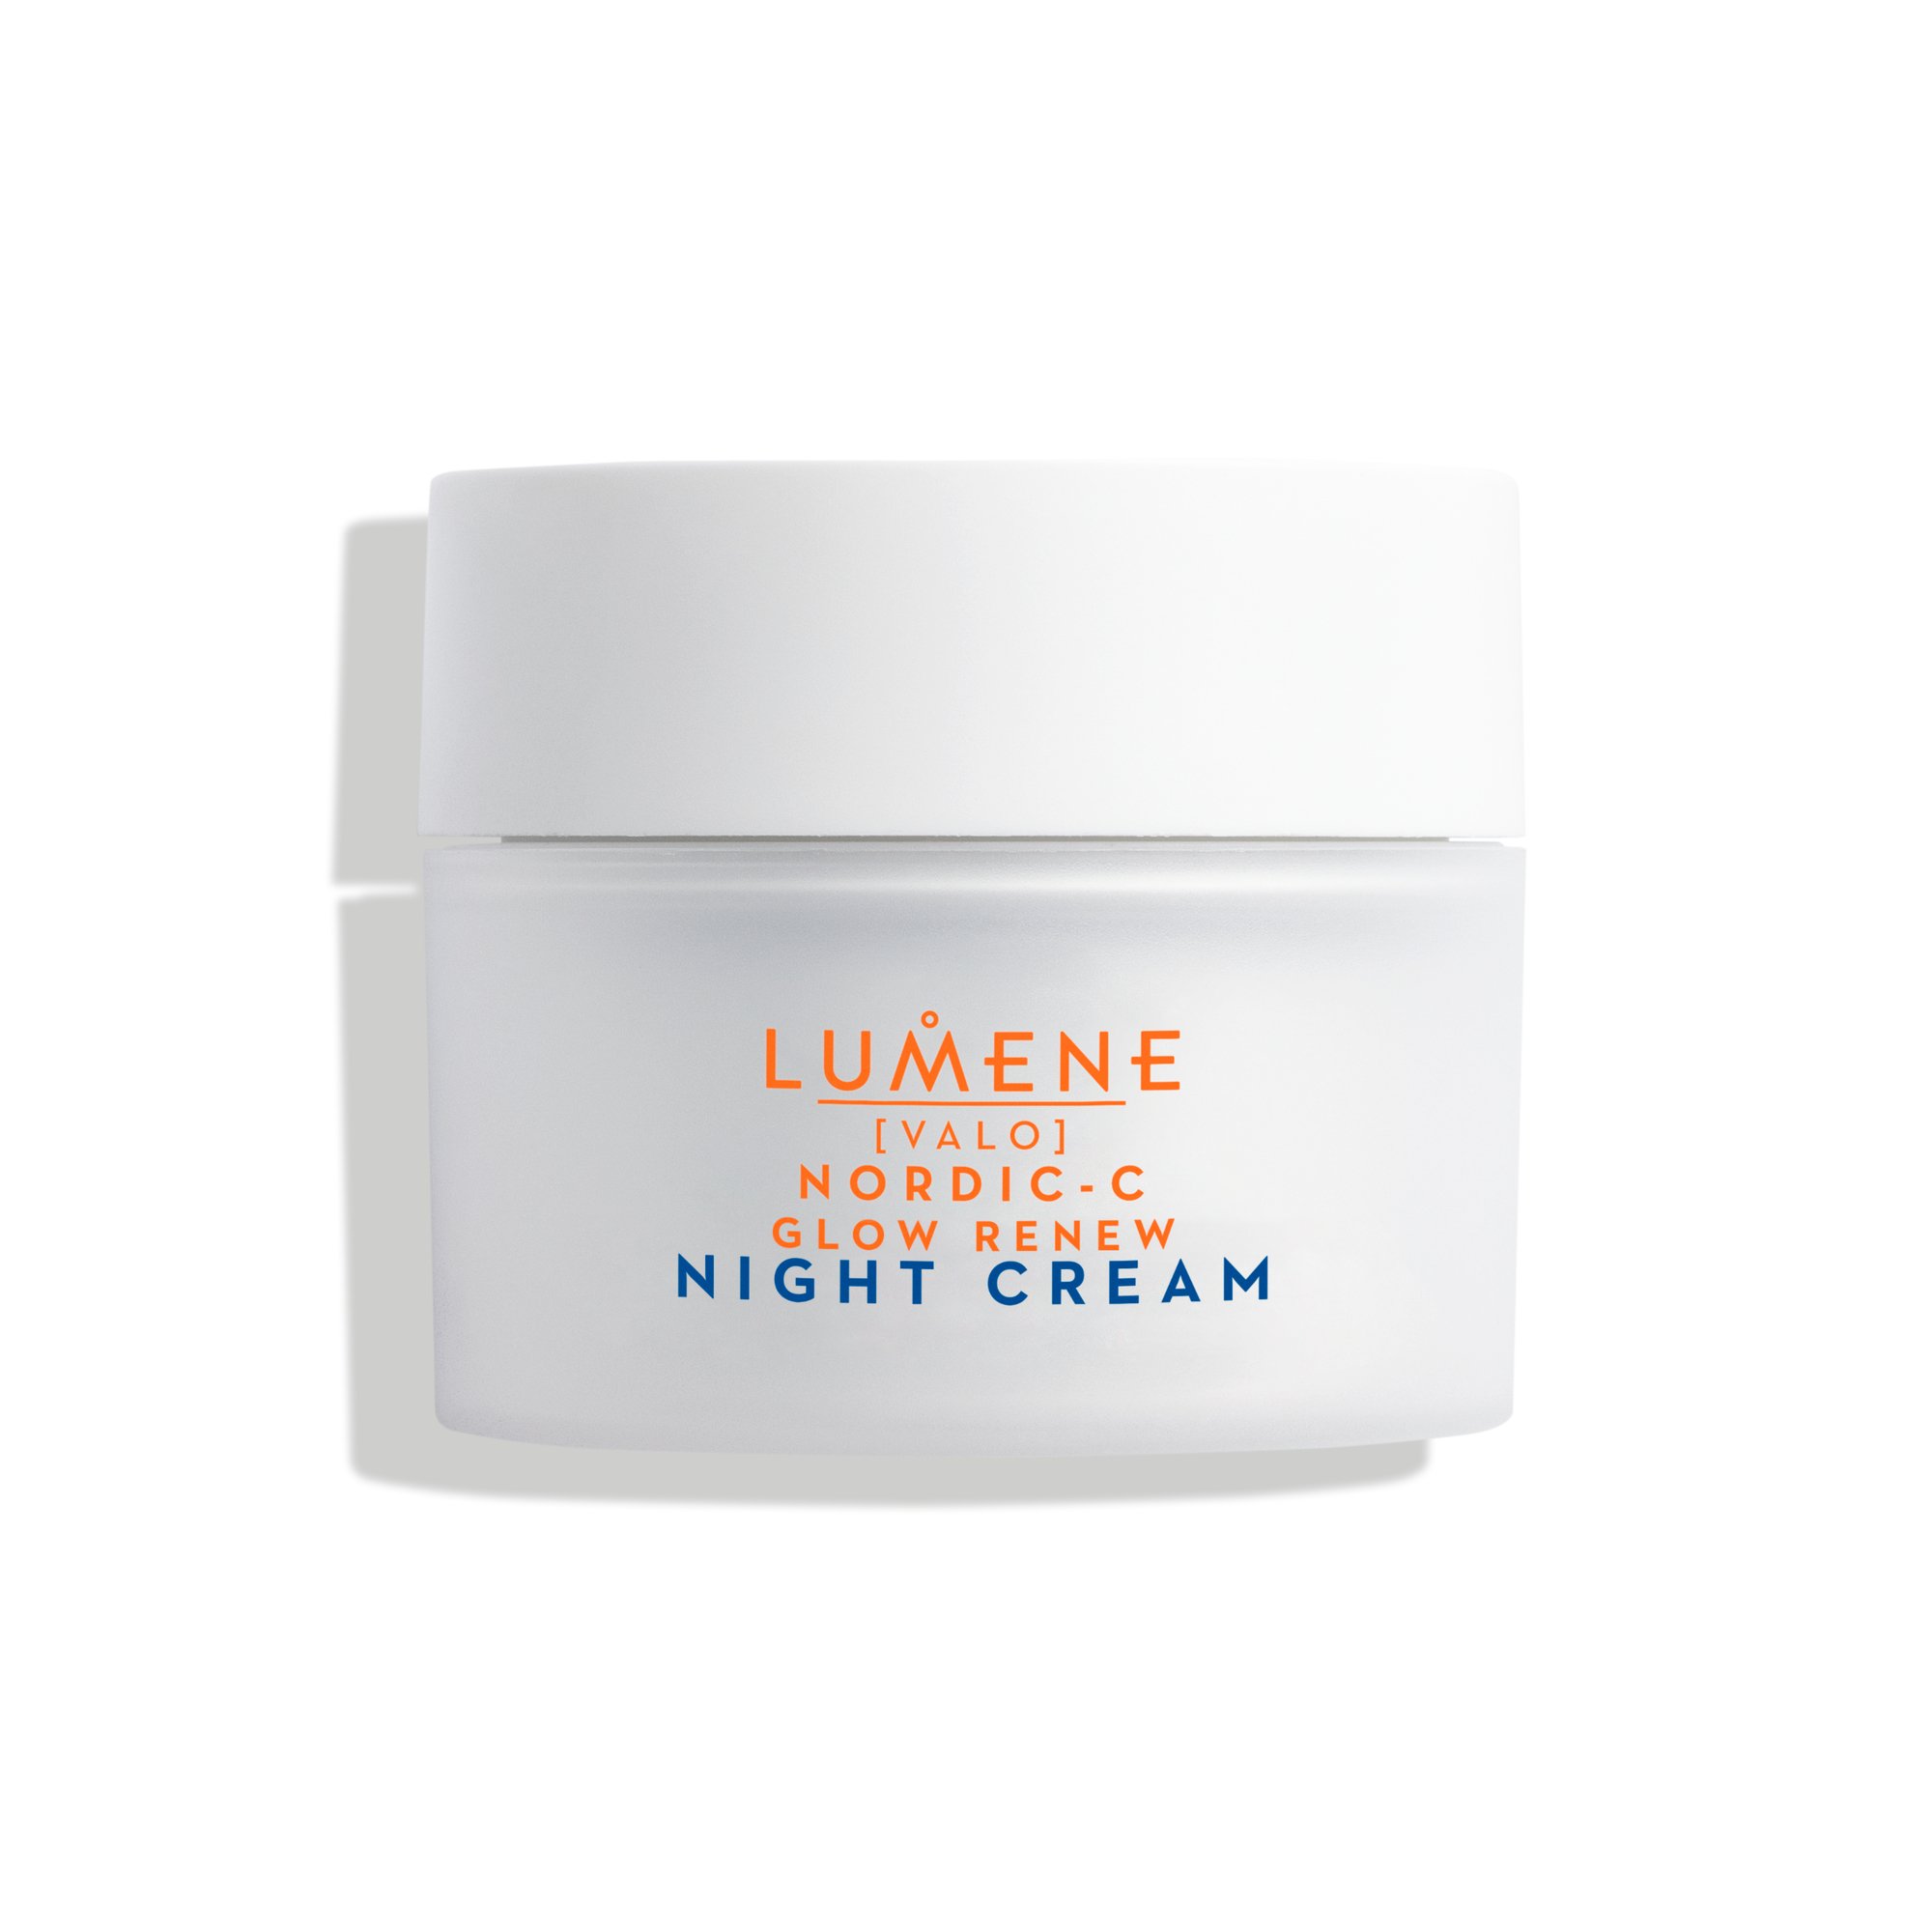 Lumene Nordic-C Glow Renew Night Cream, 50 ml